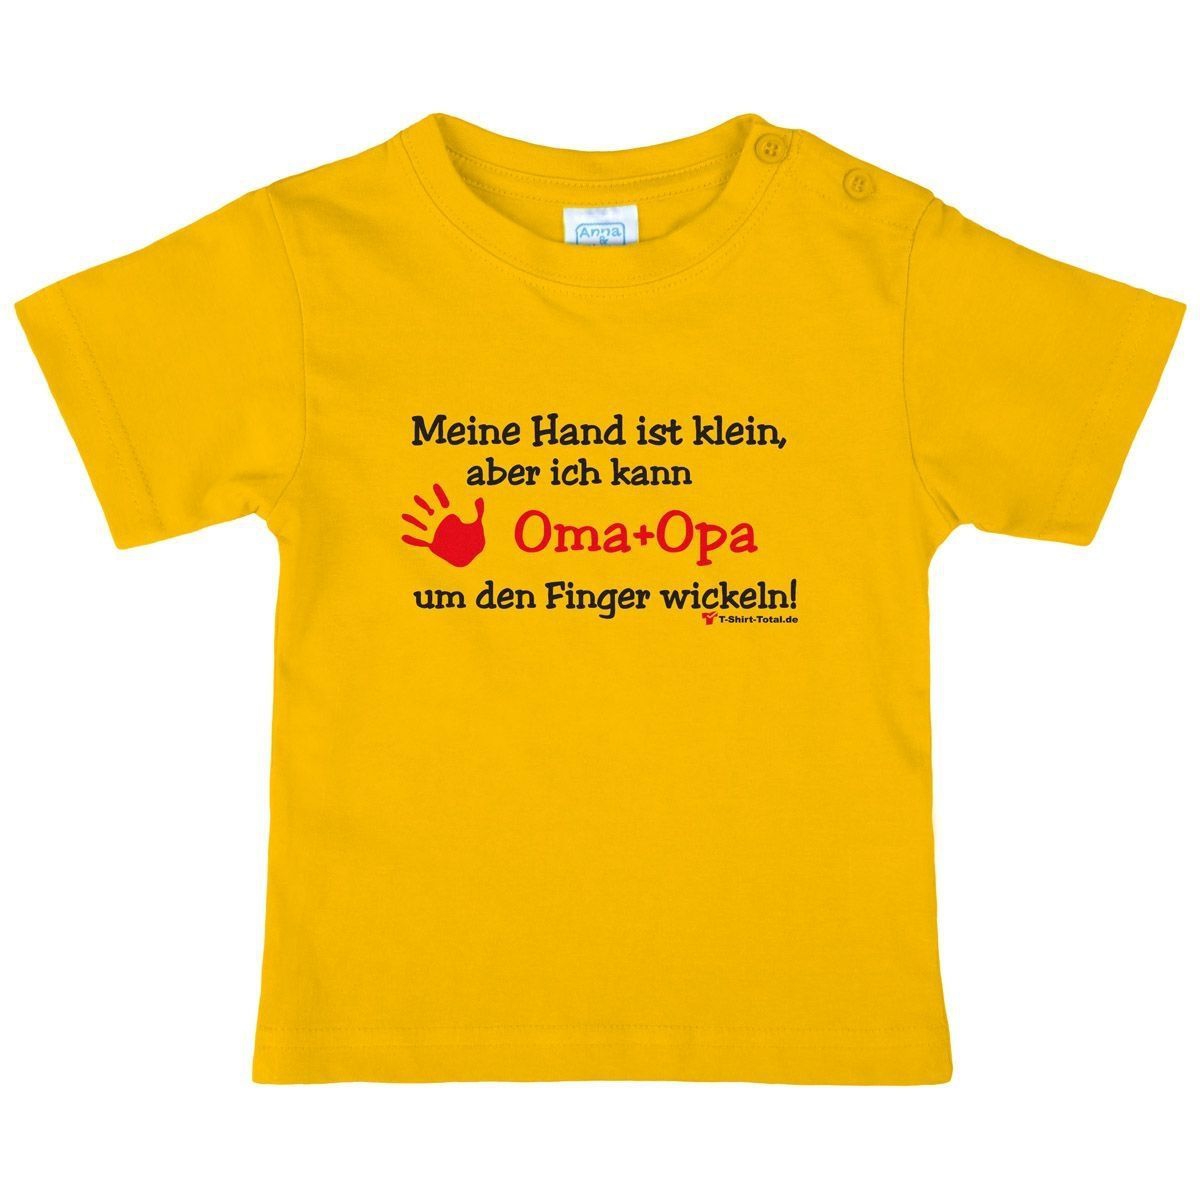 Kleine Hand Oma Opa Kinder T-Shirt gelb 104